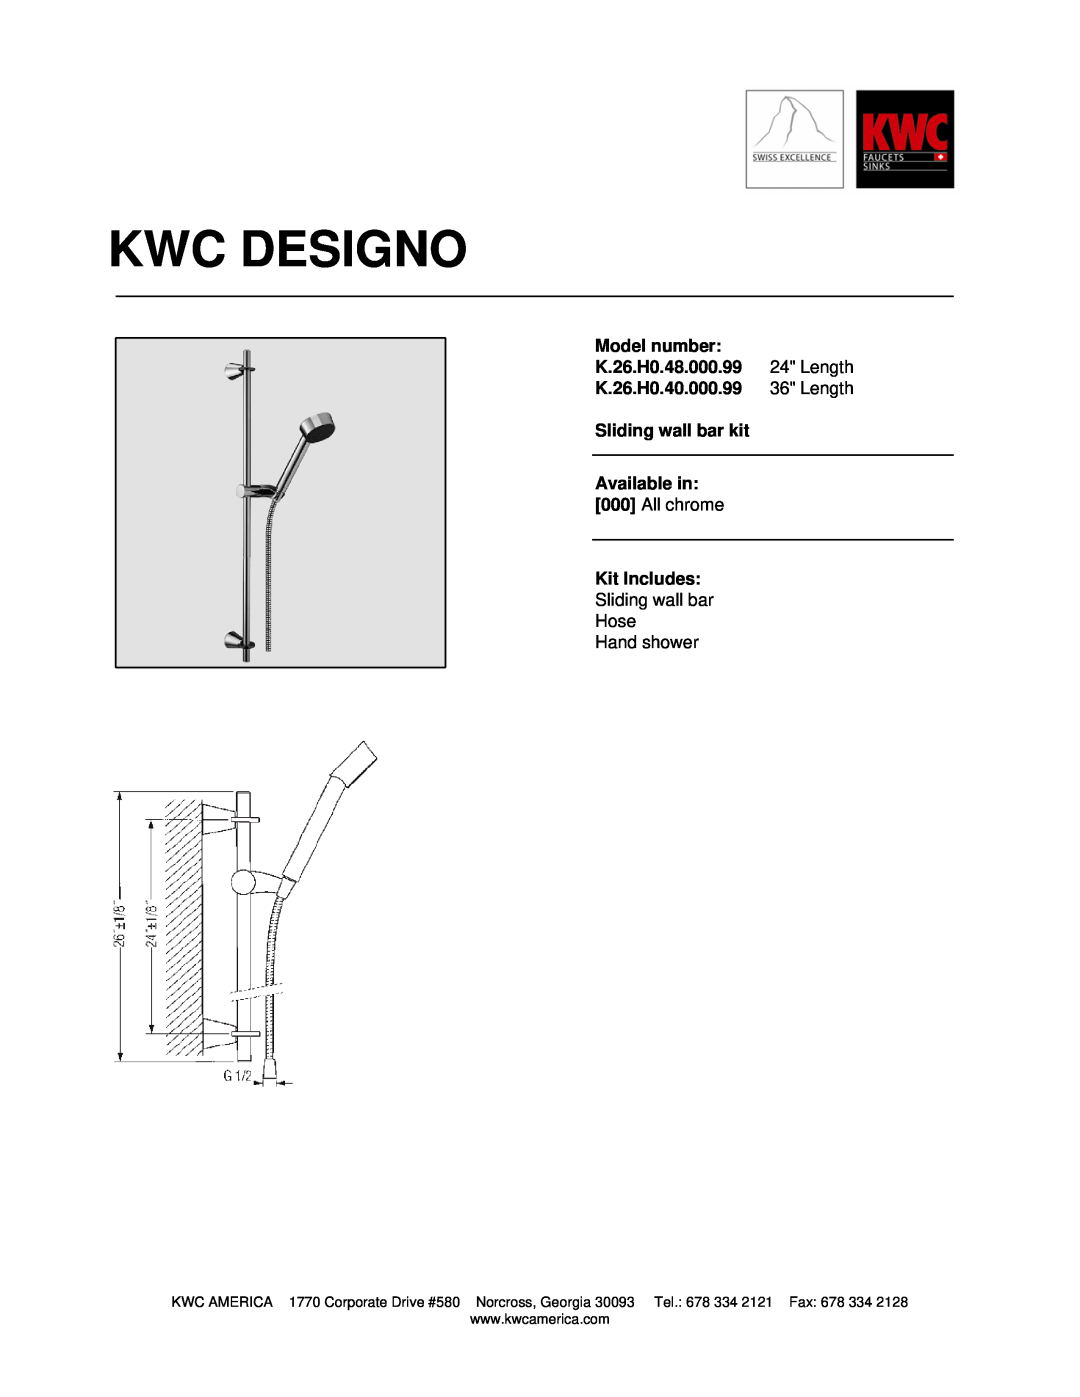 KWC K.26.H0.48.000.99 manual Kwc Designo 